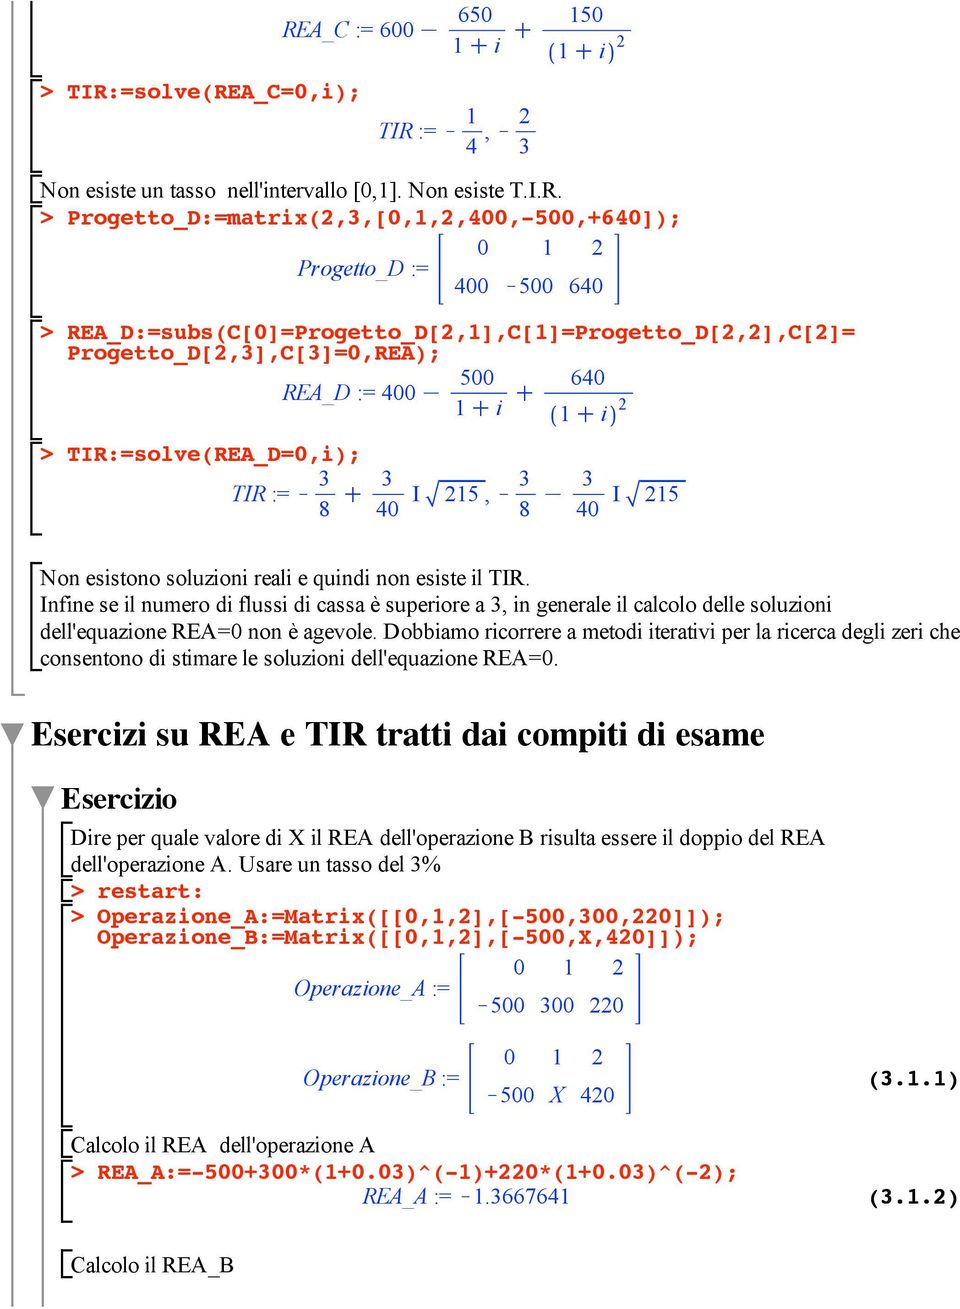 Non esistono soluzioni reali e quindi non esiste il TIR. Infine se il numero di flussi di cassa è superiore a 3, in generale il calcolo delle soluzioni dell'equazione REA=0 non è agevole.